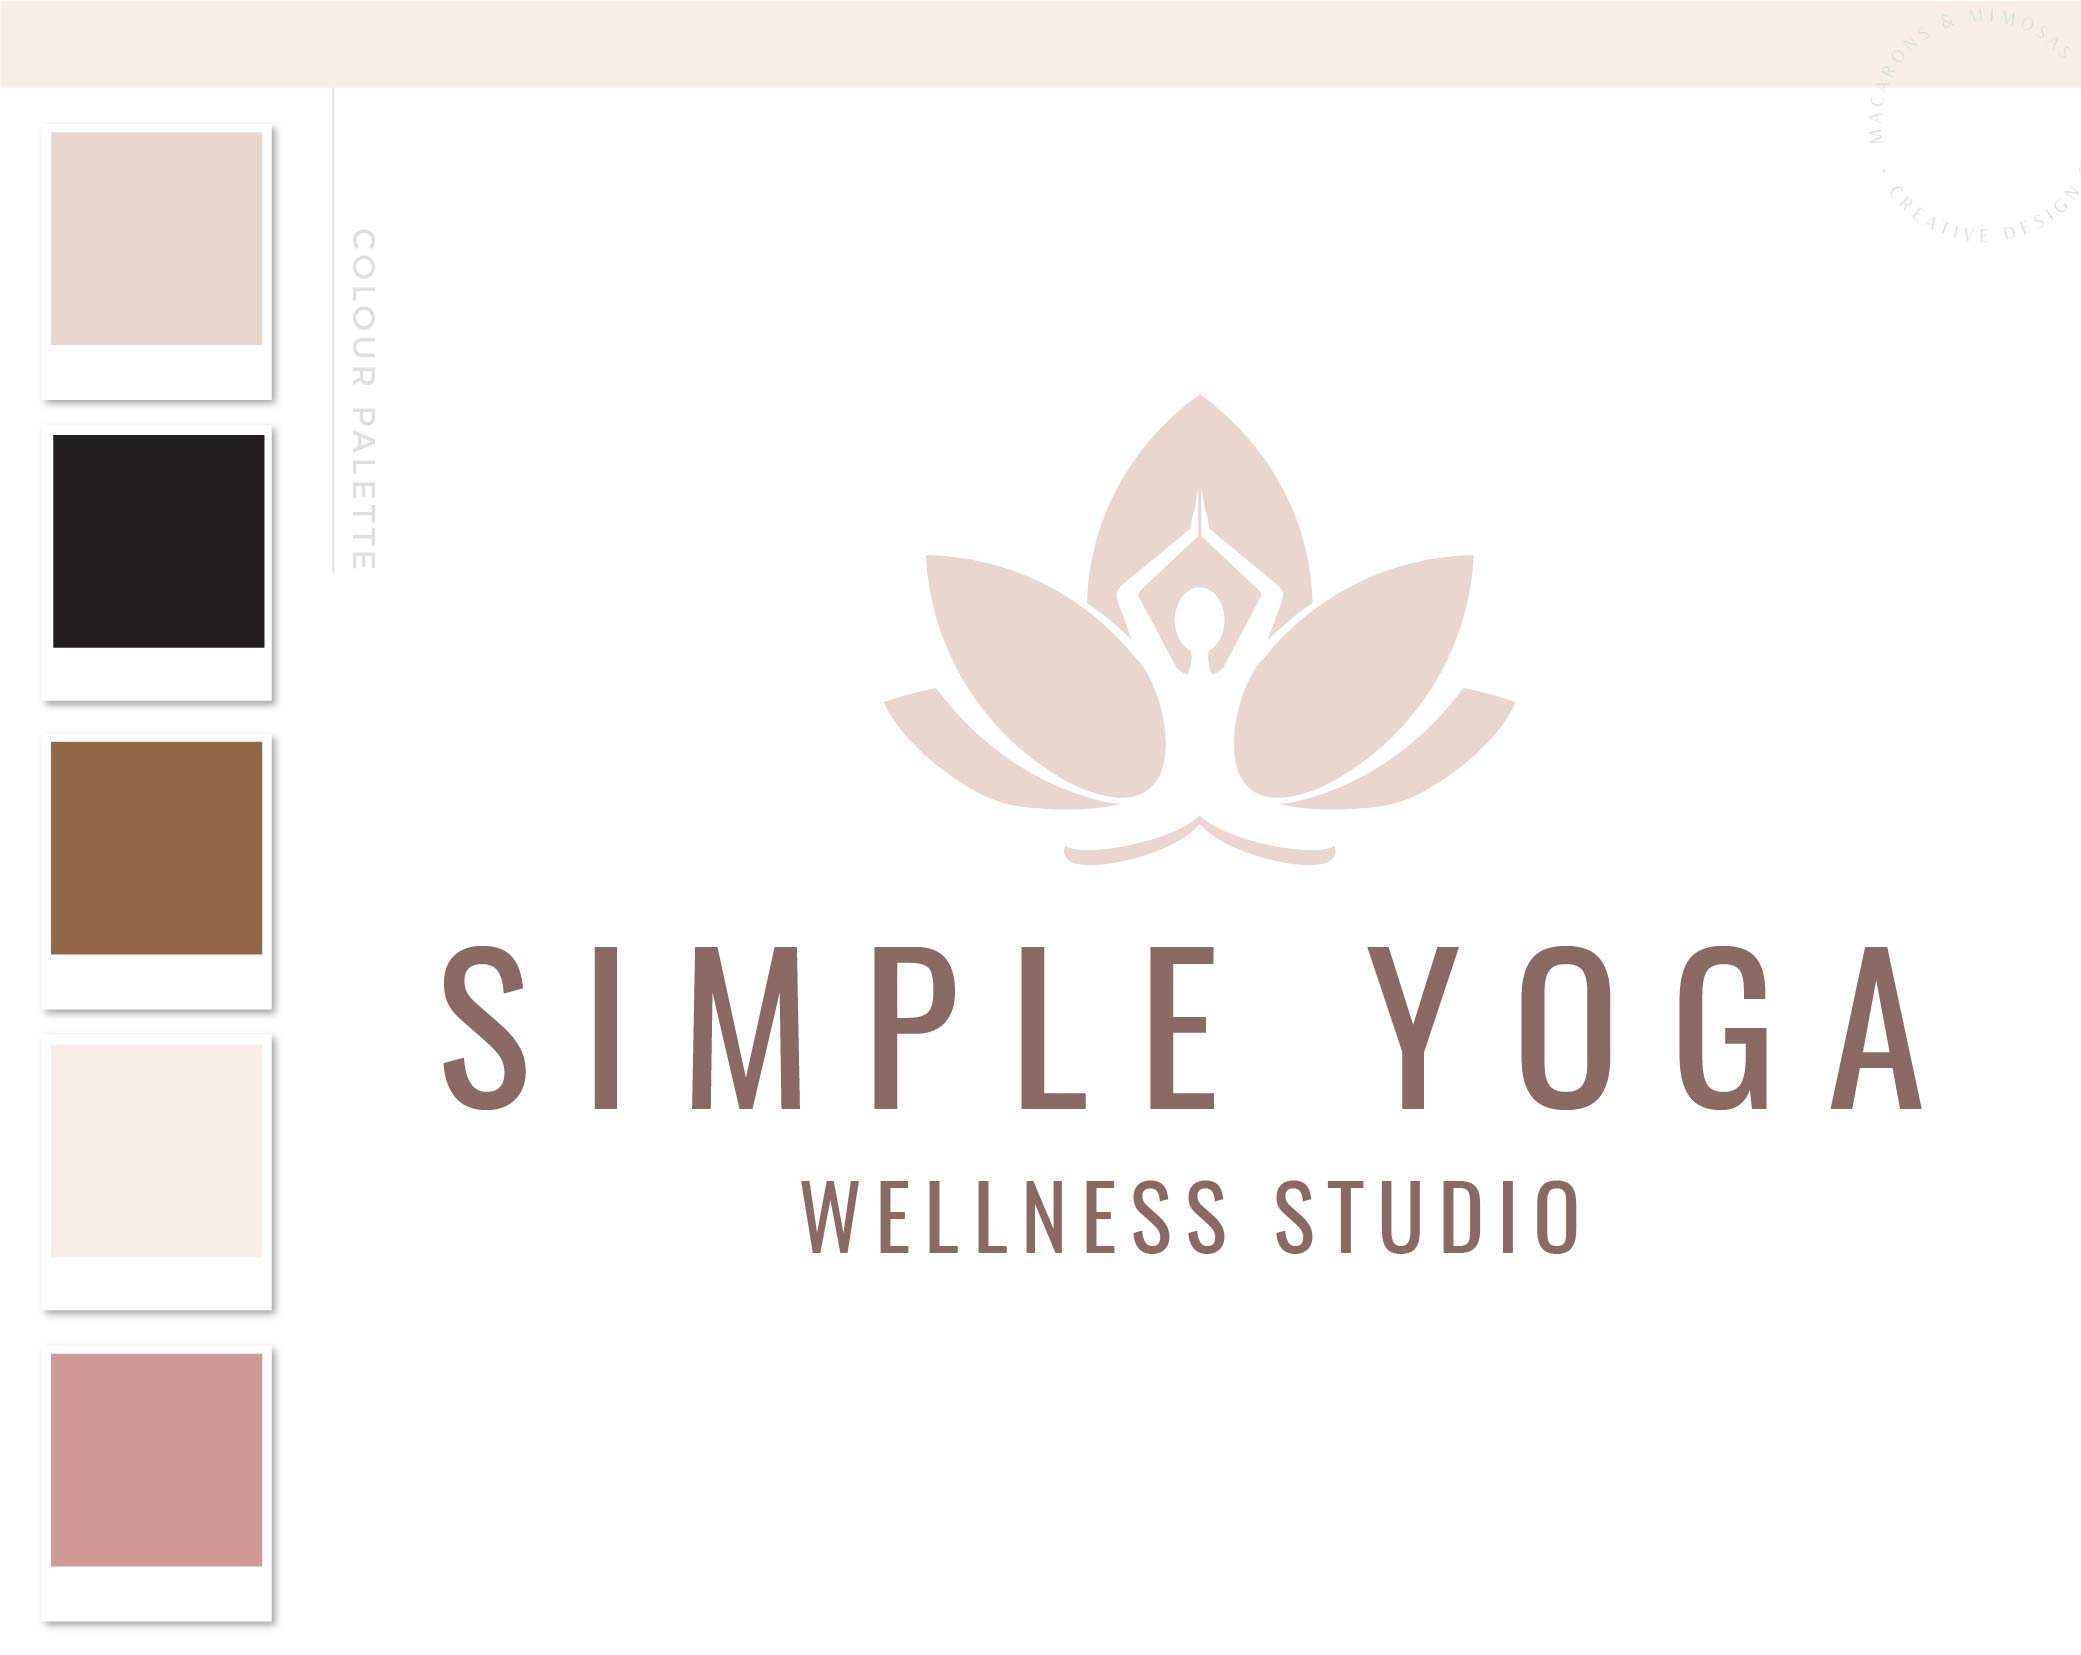 Lotus Flower Girl Logo, Yoga Logos Watermark, Fitness Training, Health Wellness Pilates Studio Branding Logo Design, Barre Logo Package